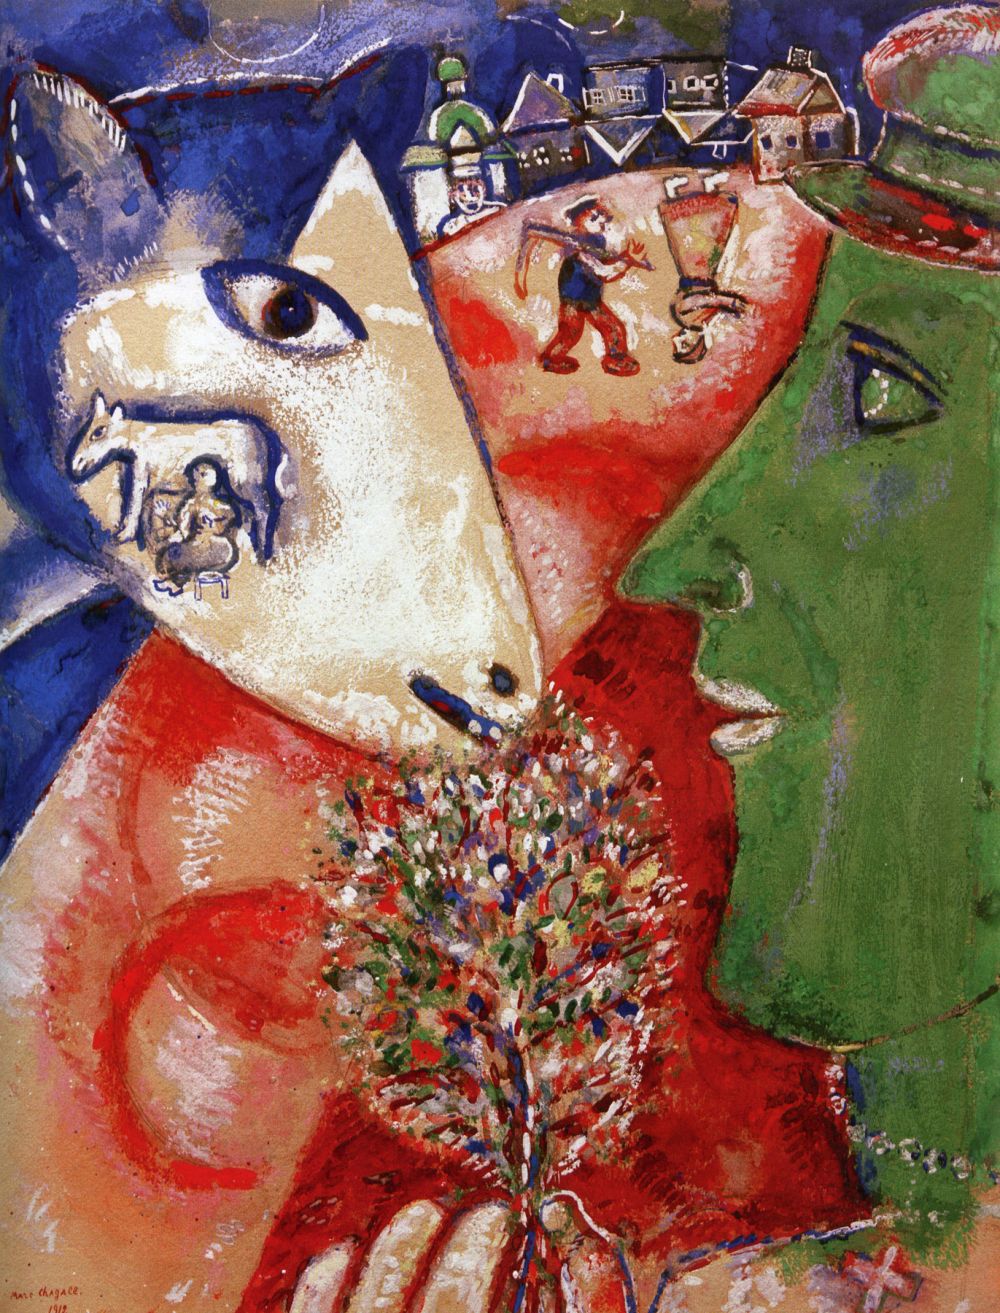 ФРАНЦИЯ. Предмет гордости: Марк Шагал. Наш след: один из самых известных представителей художественного авангарда XX века Марк Шагал родился и формировался как художник в Витебске.